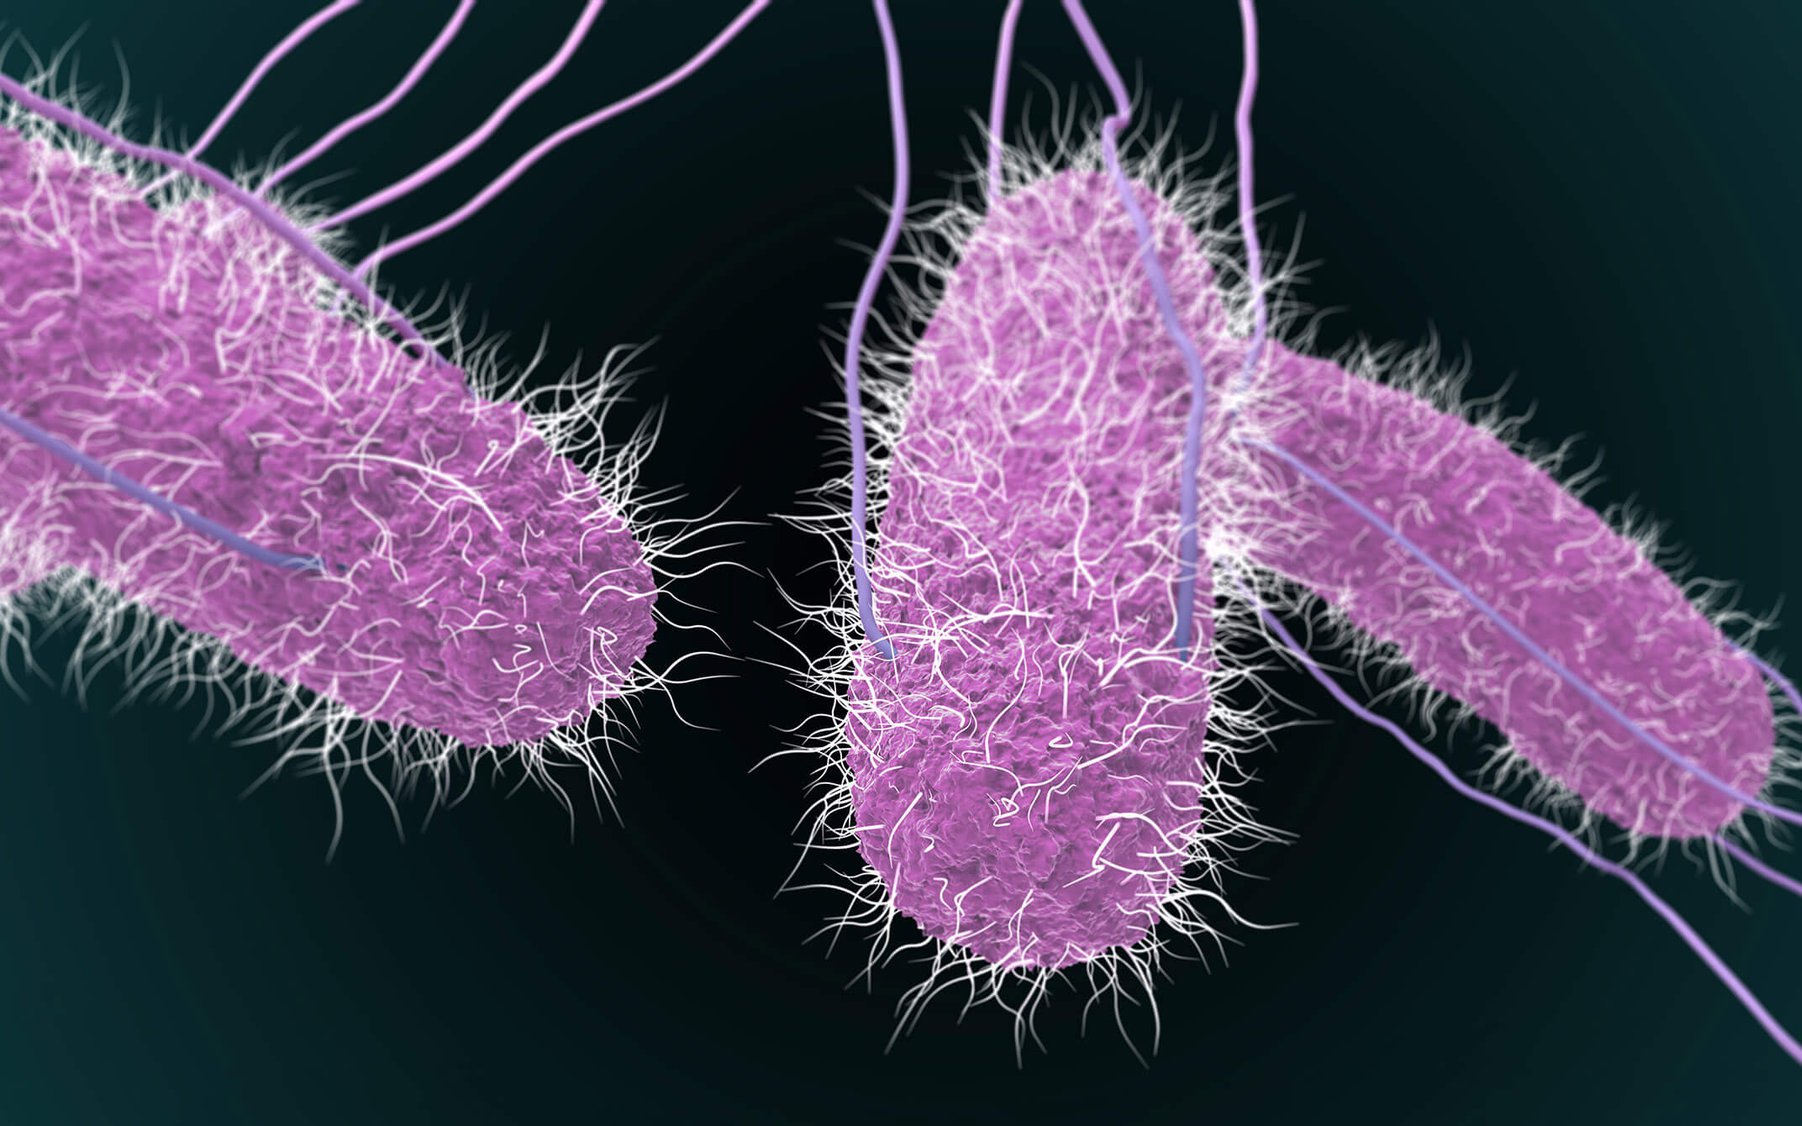 Thực phẩm nào có thể nhiễm khuẩn Salmonella - nguyên nhân được hướng đến trong vụ ngộ độc tại trường iSchool Nha Trang?